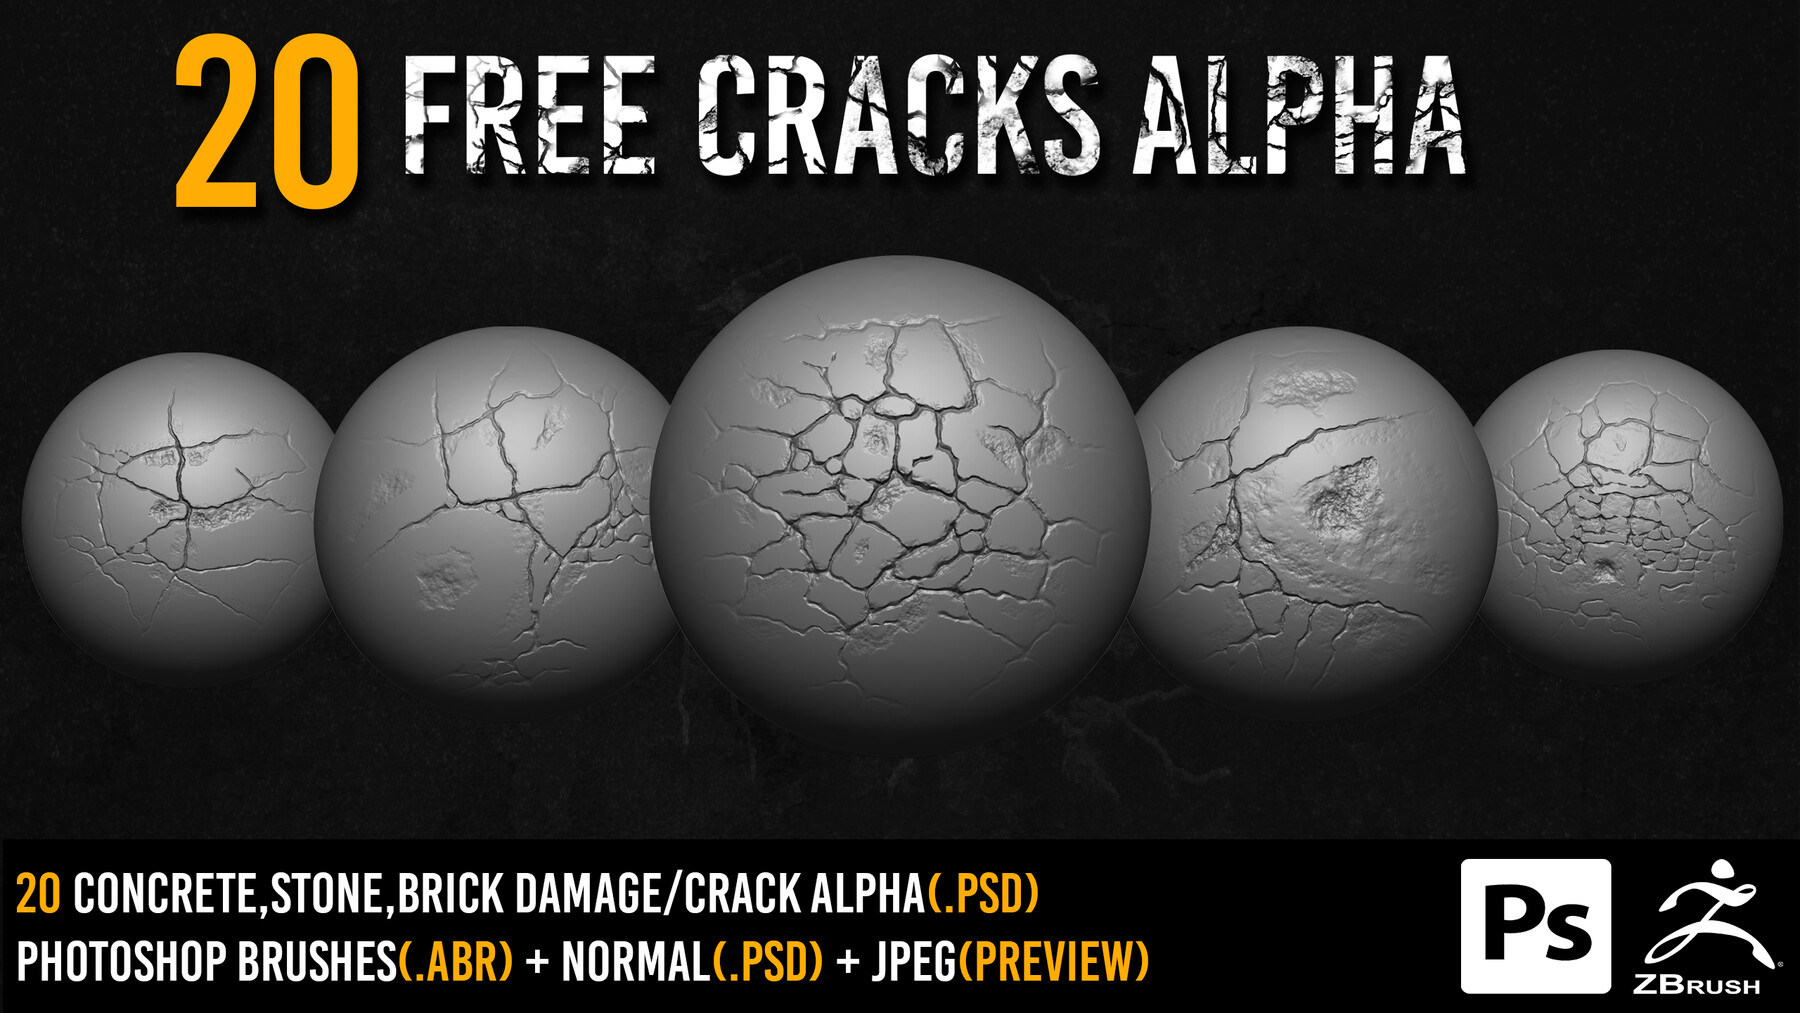 zbrush free crack